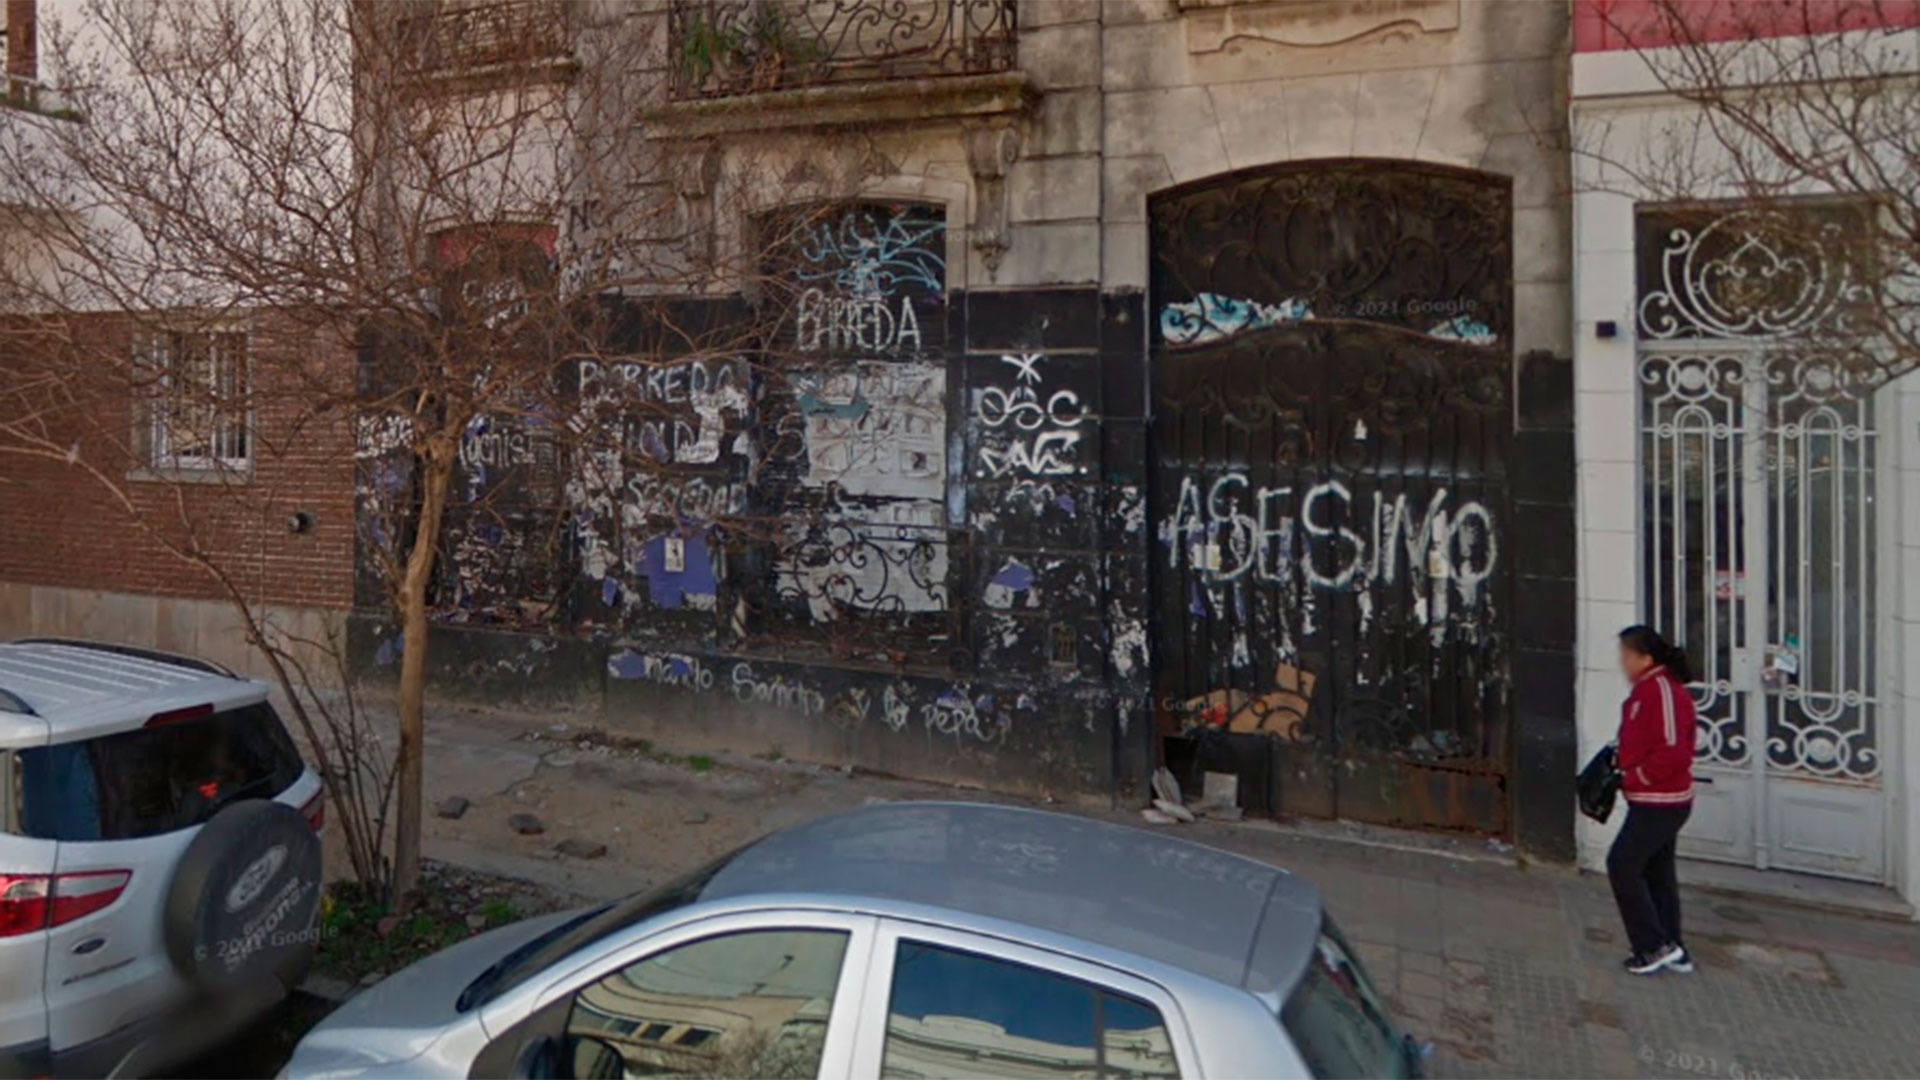 "Asesino": las pintadas en la fachada de la casona de La Plata (Google Street View)